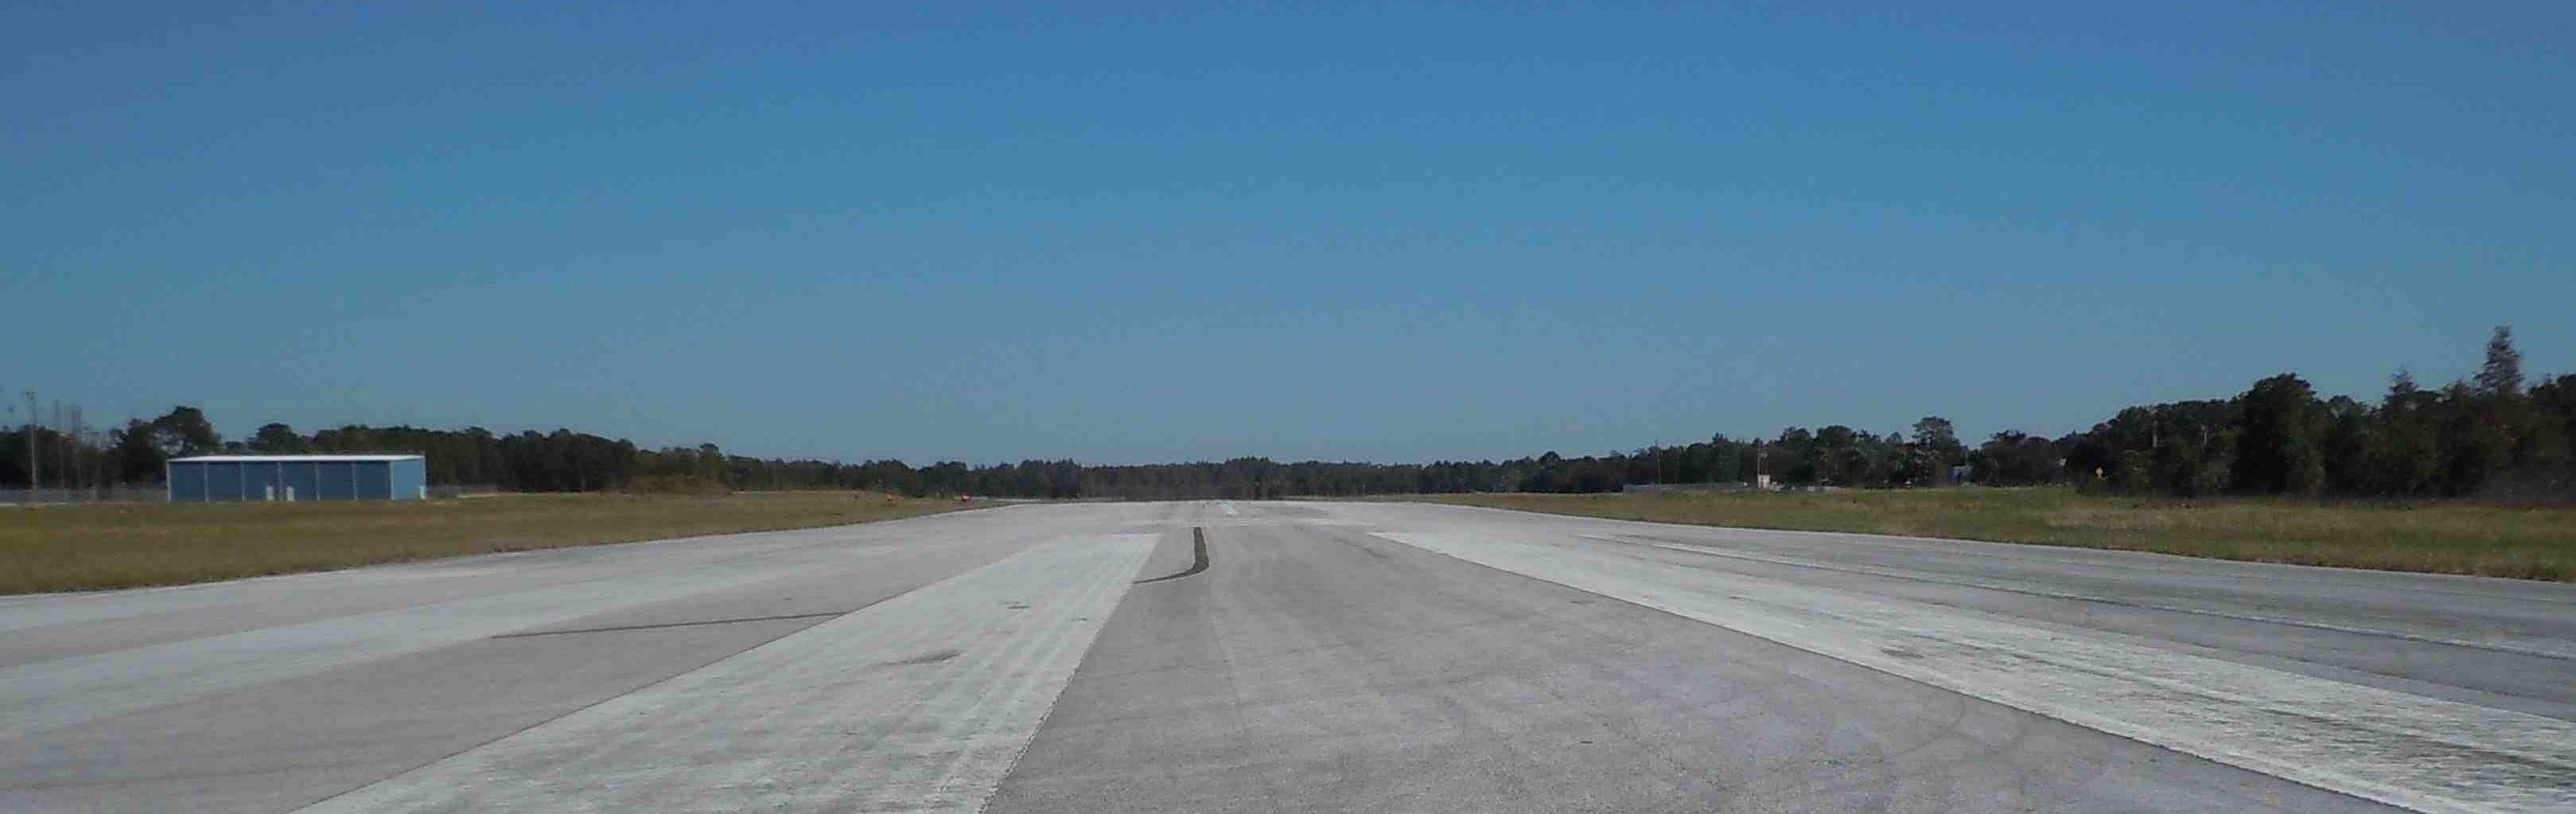 訓練空港の滑走路の写真です。